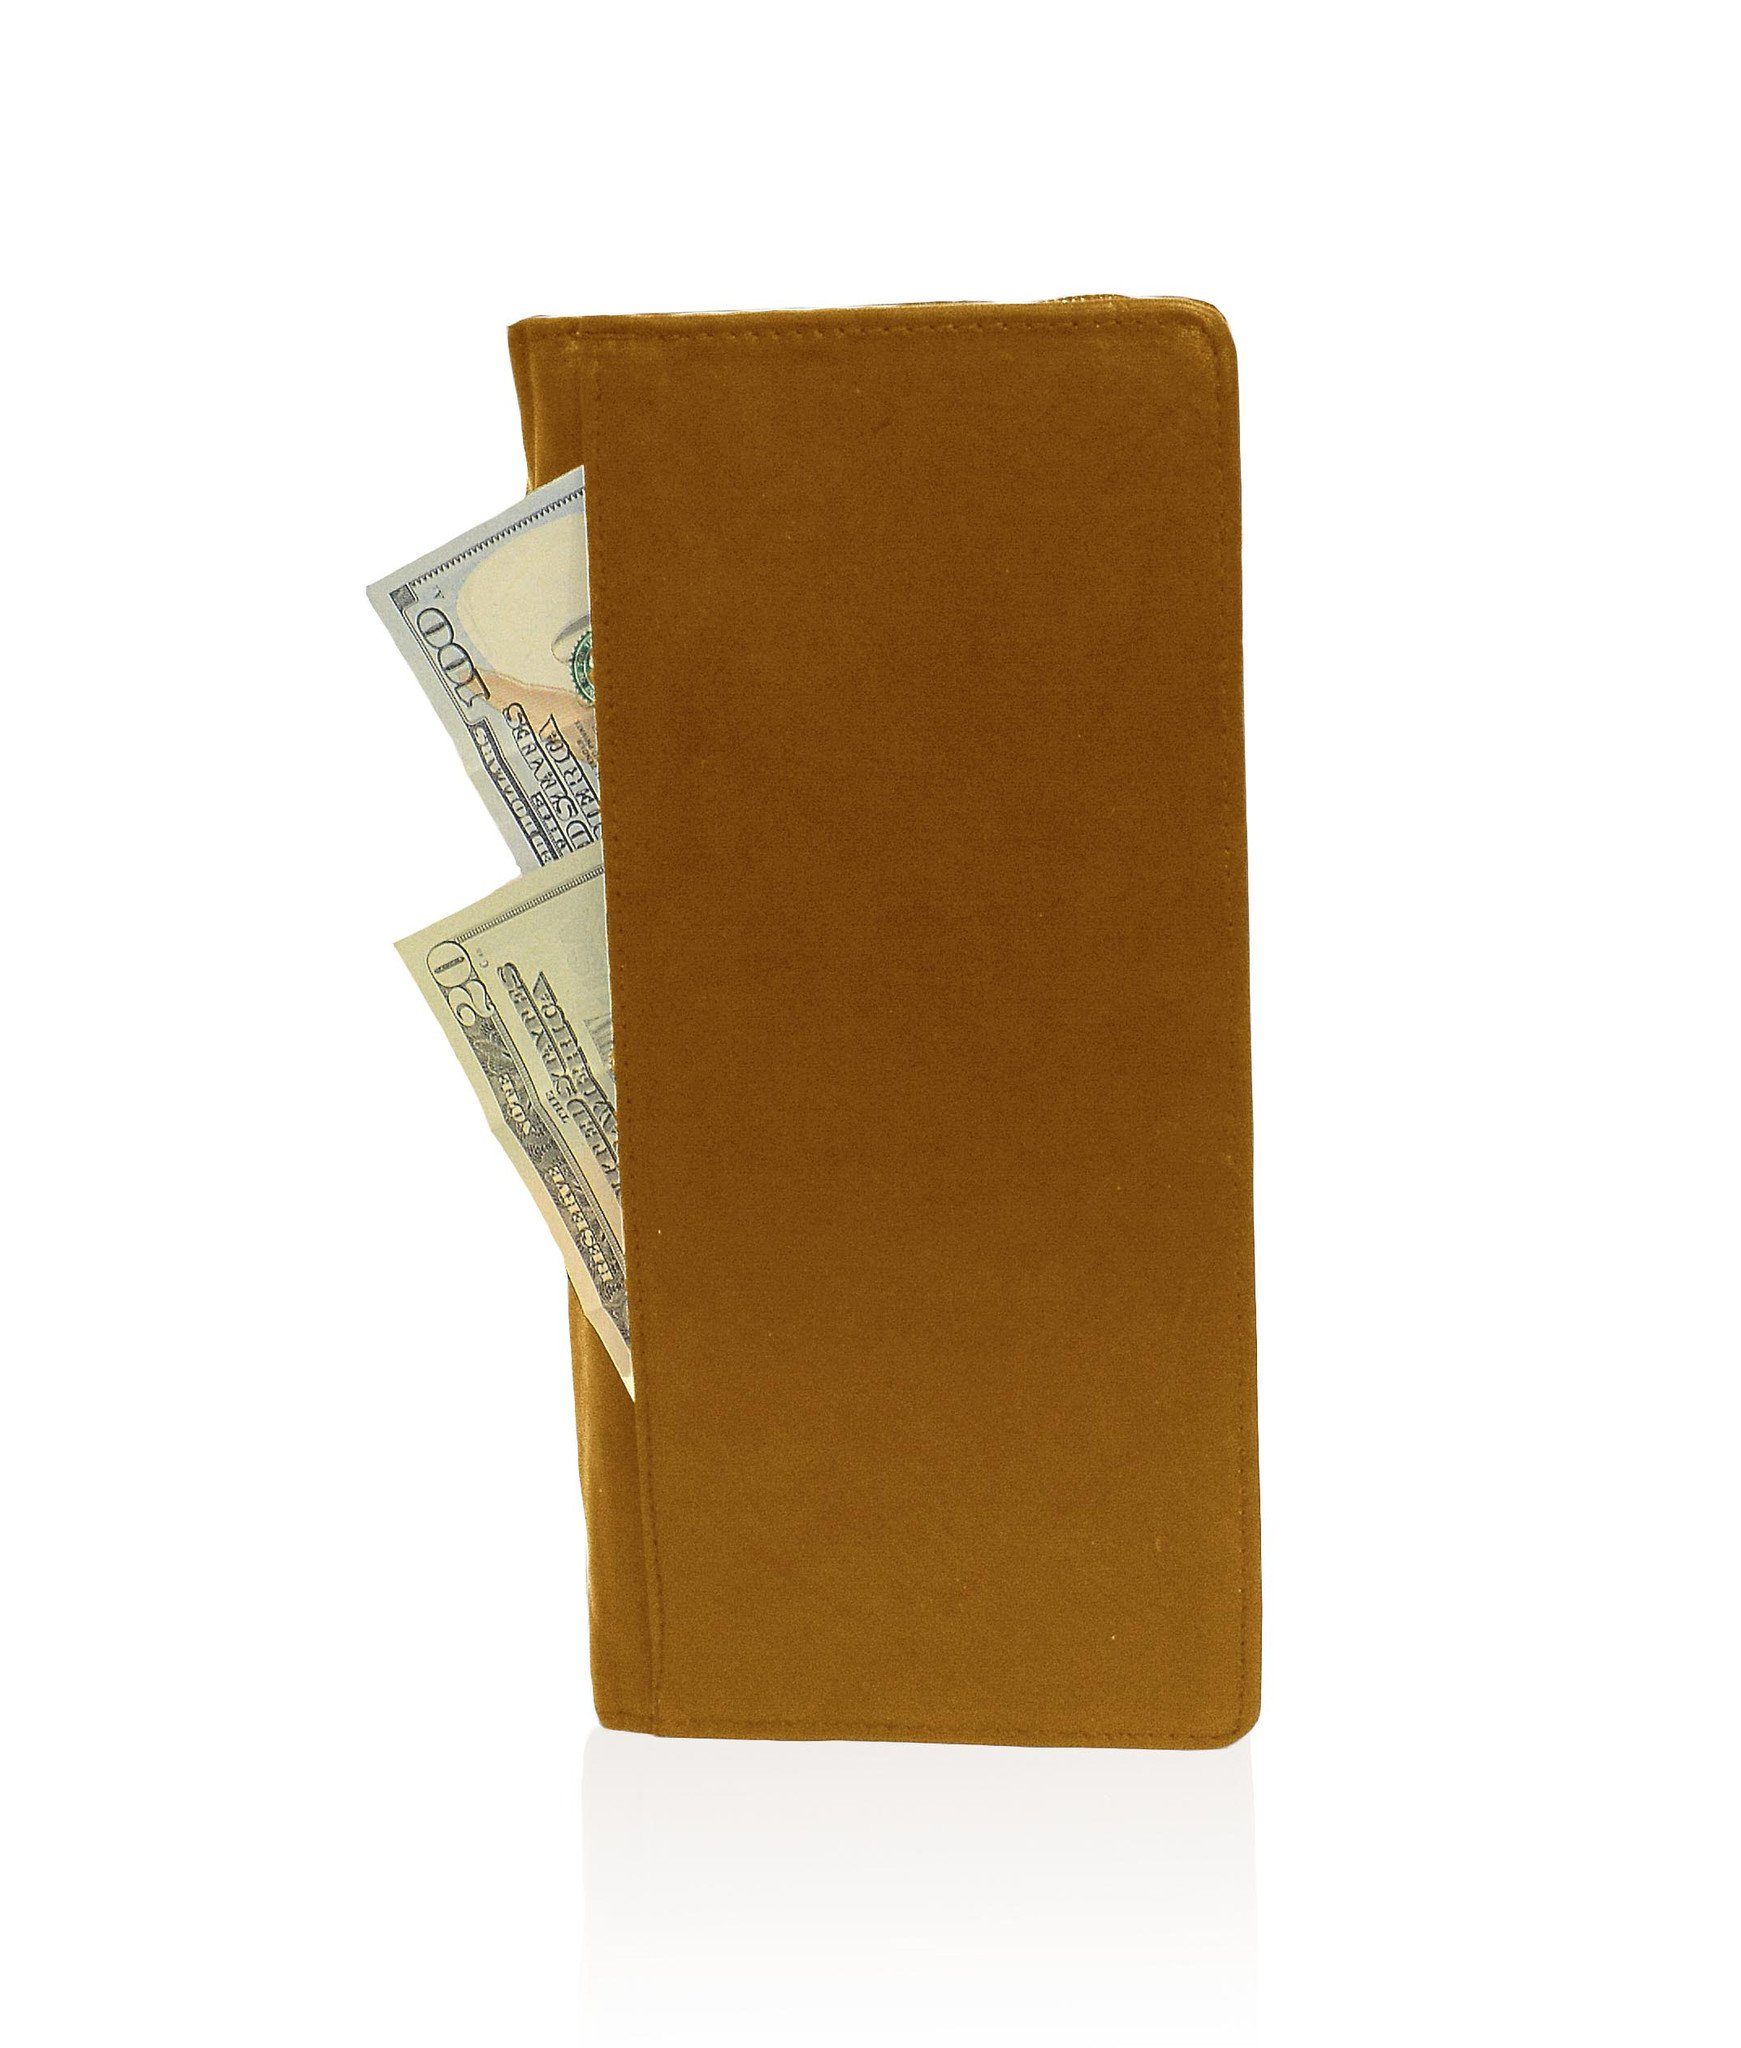 Genuine RFID-Blocking Men's Leather Bifold Wallet Organizer Checkbook Card Case - Burgundy